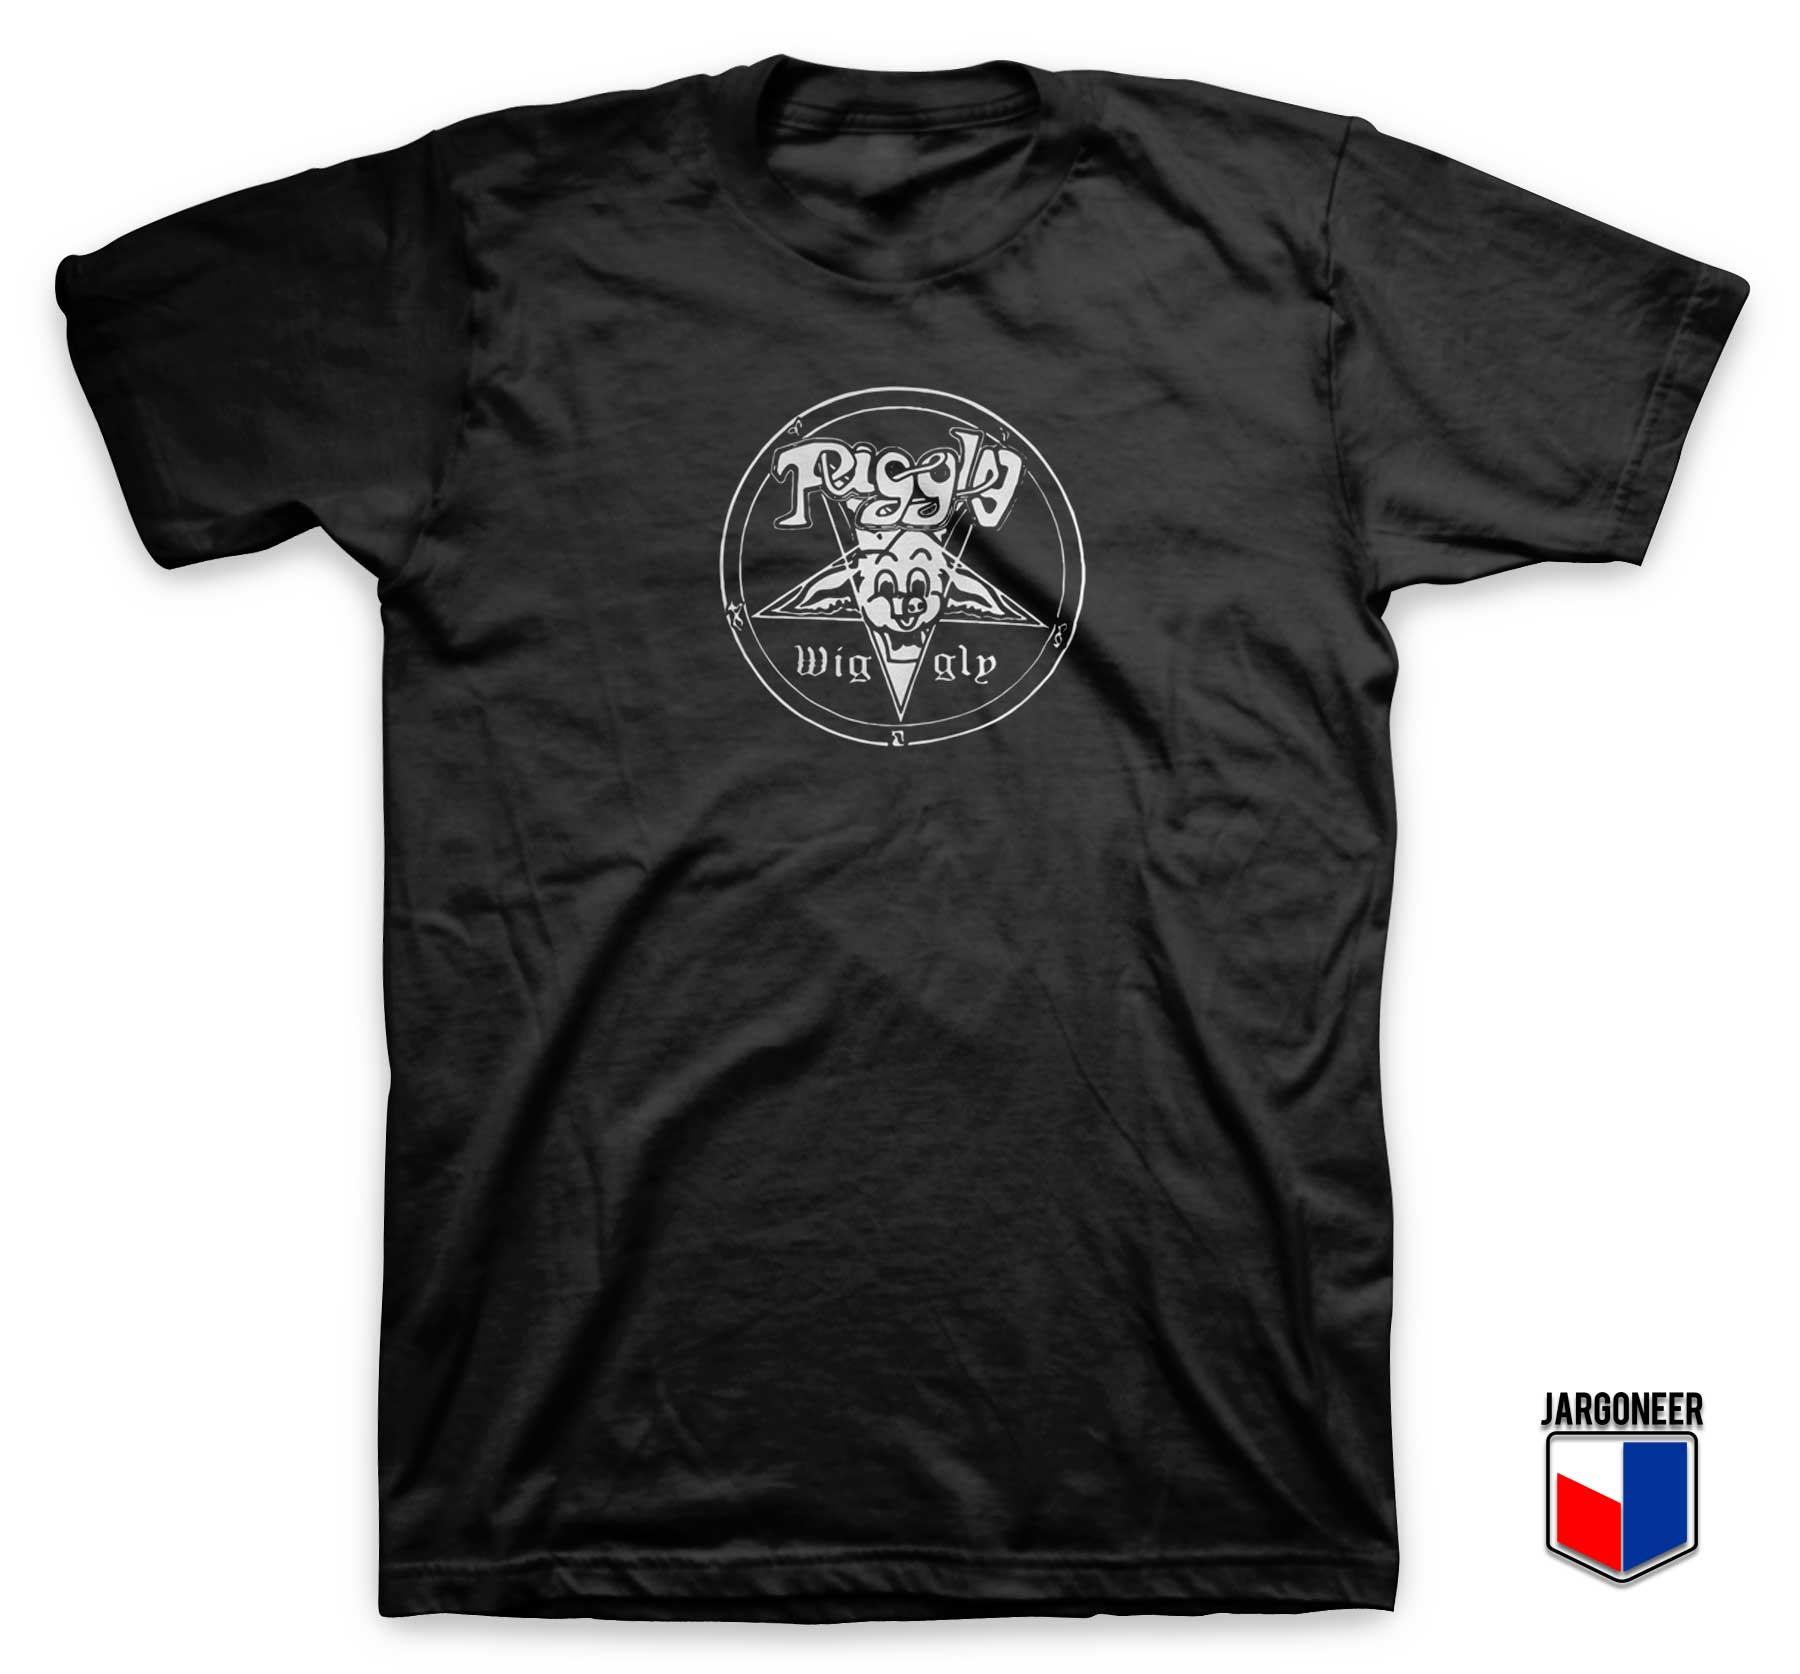 Piggly Wiggly T Shirt - Shop Unique Graphic Cool Shirt Designs